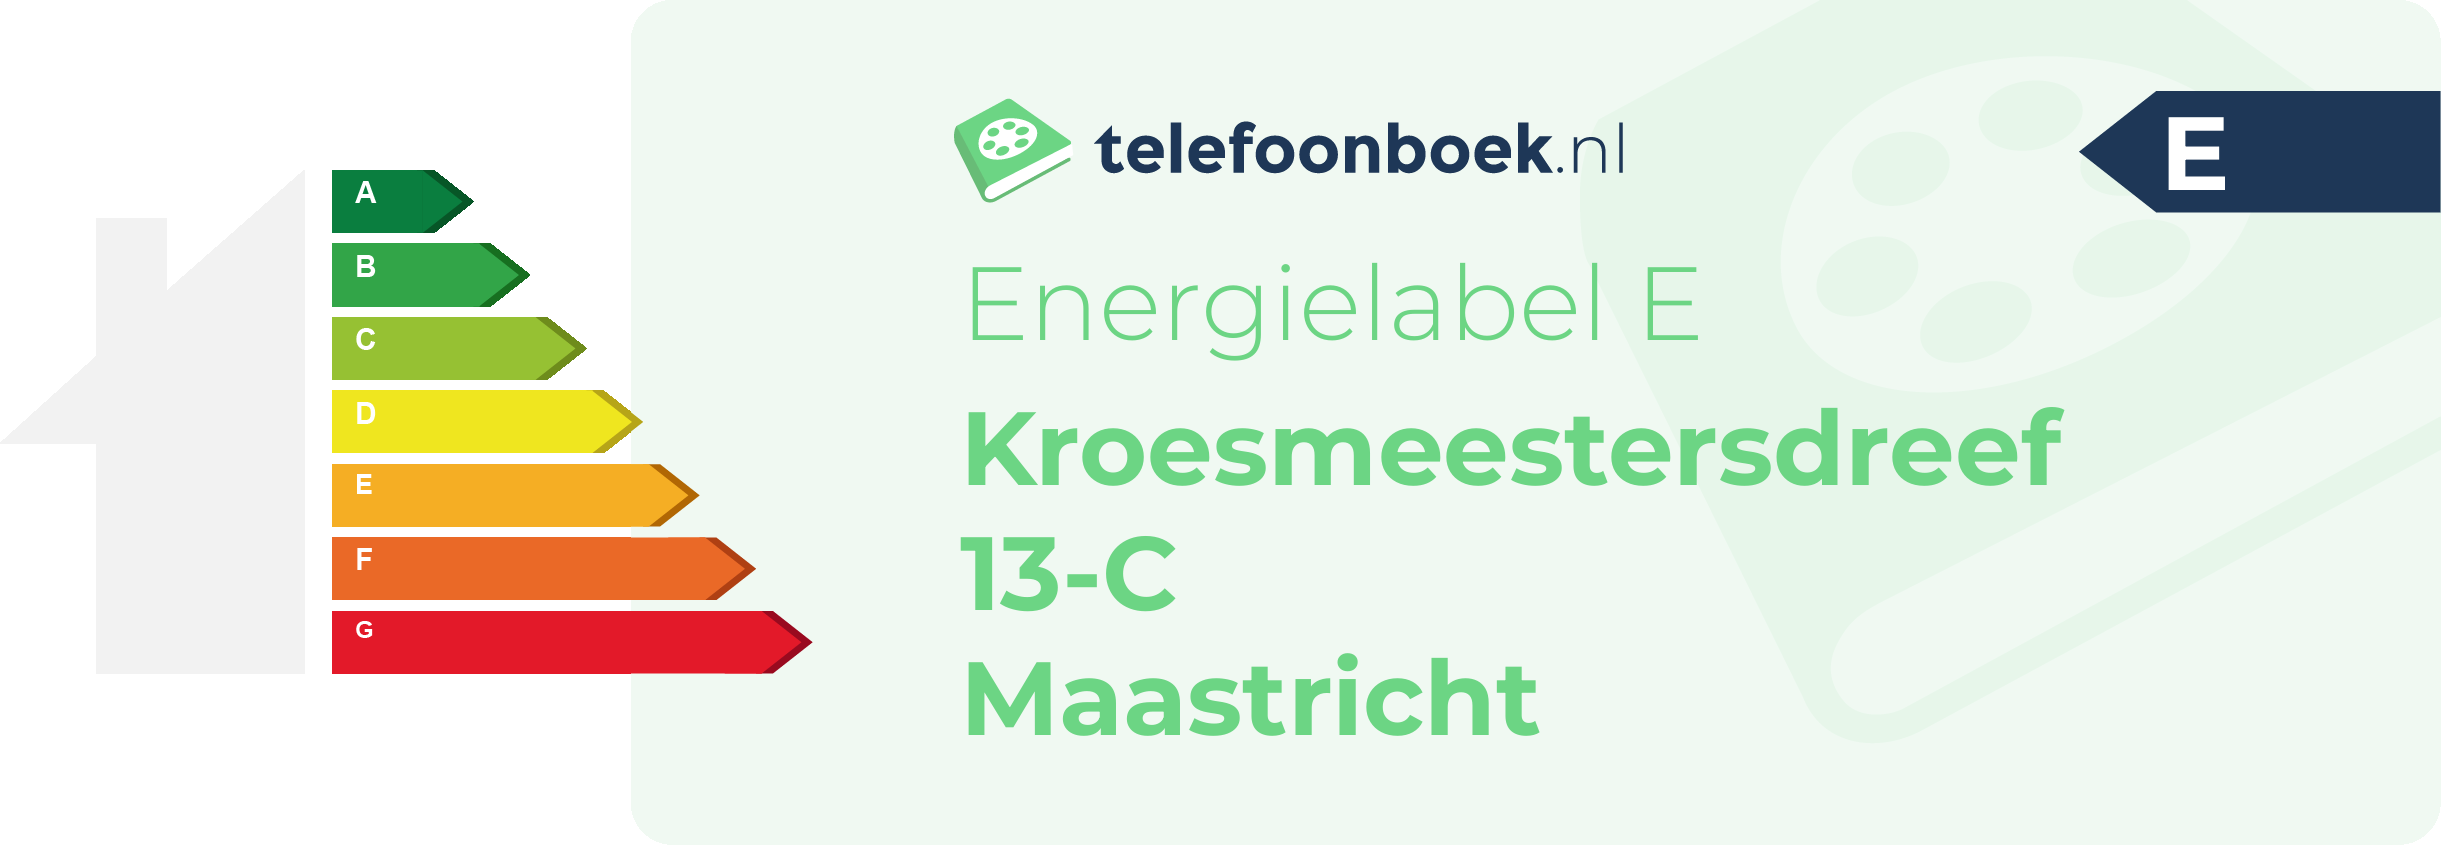 Energielabel Kroesmeestersdreef 13-C Maastricht